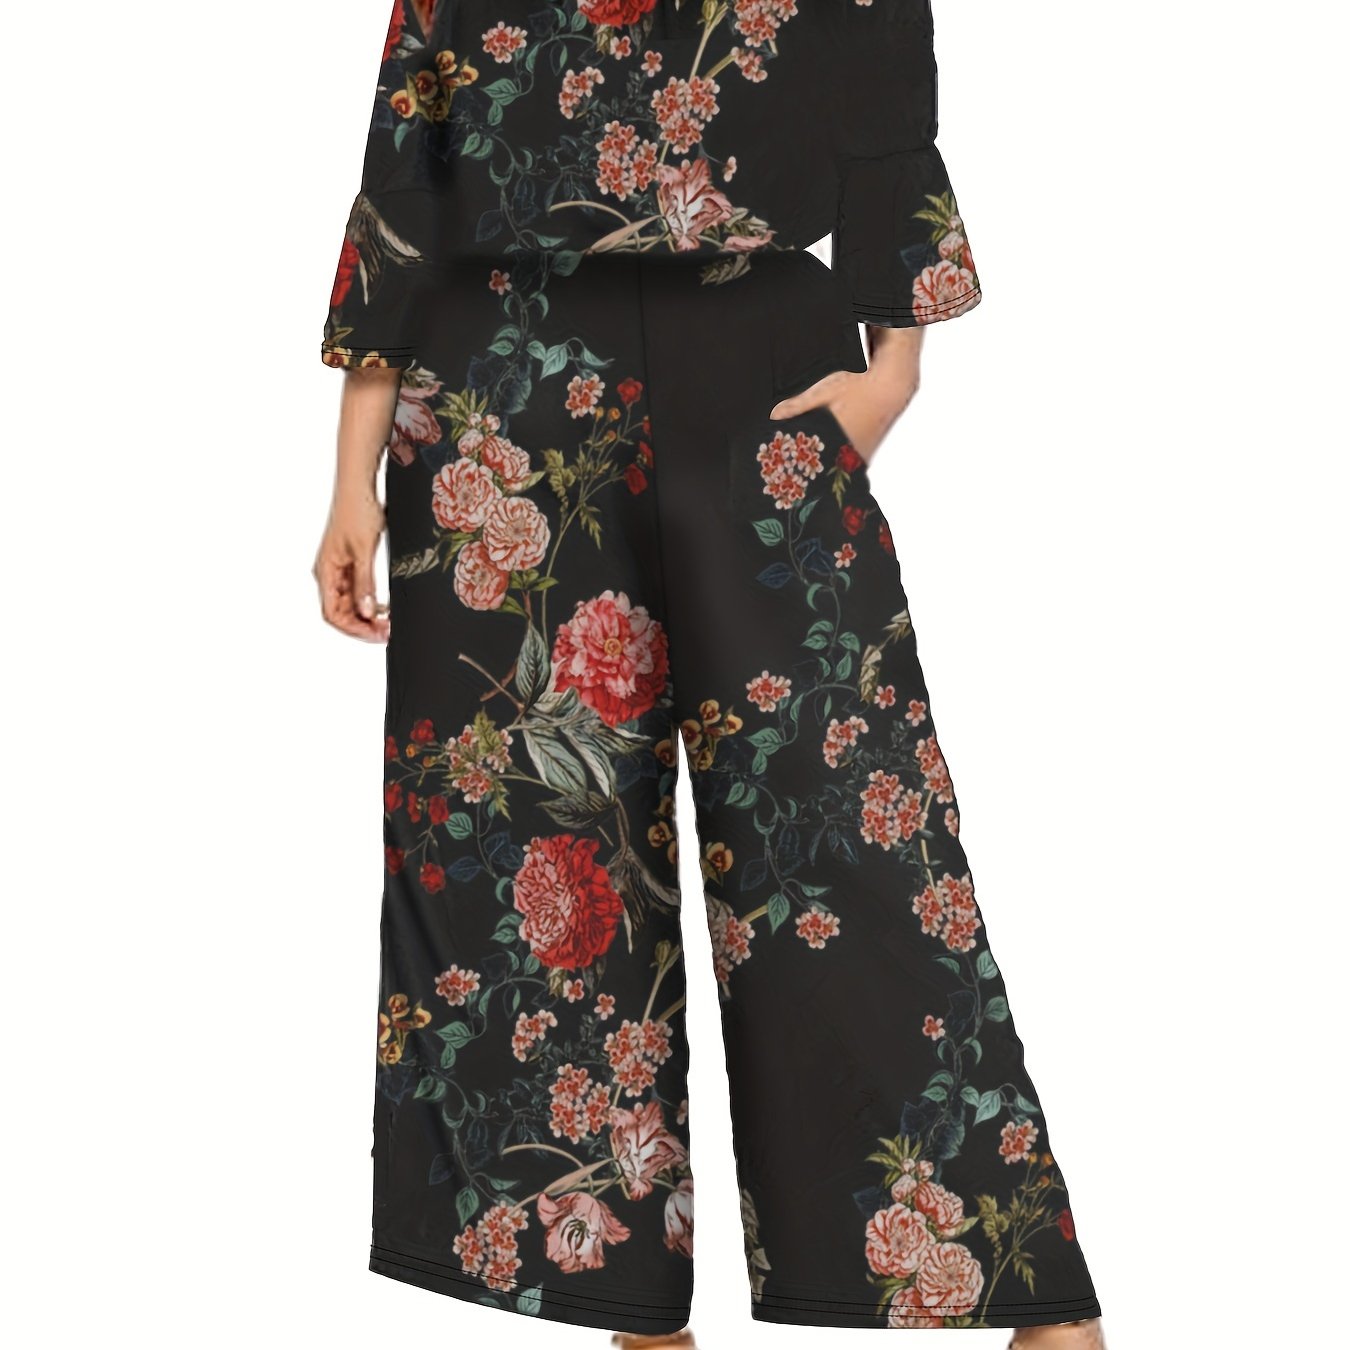 plus size floral print wide leg jumpsuit casual off shoulder 3 4 sleeve one piece jumpsuit womens plus size clothing